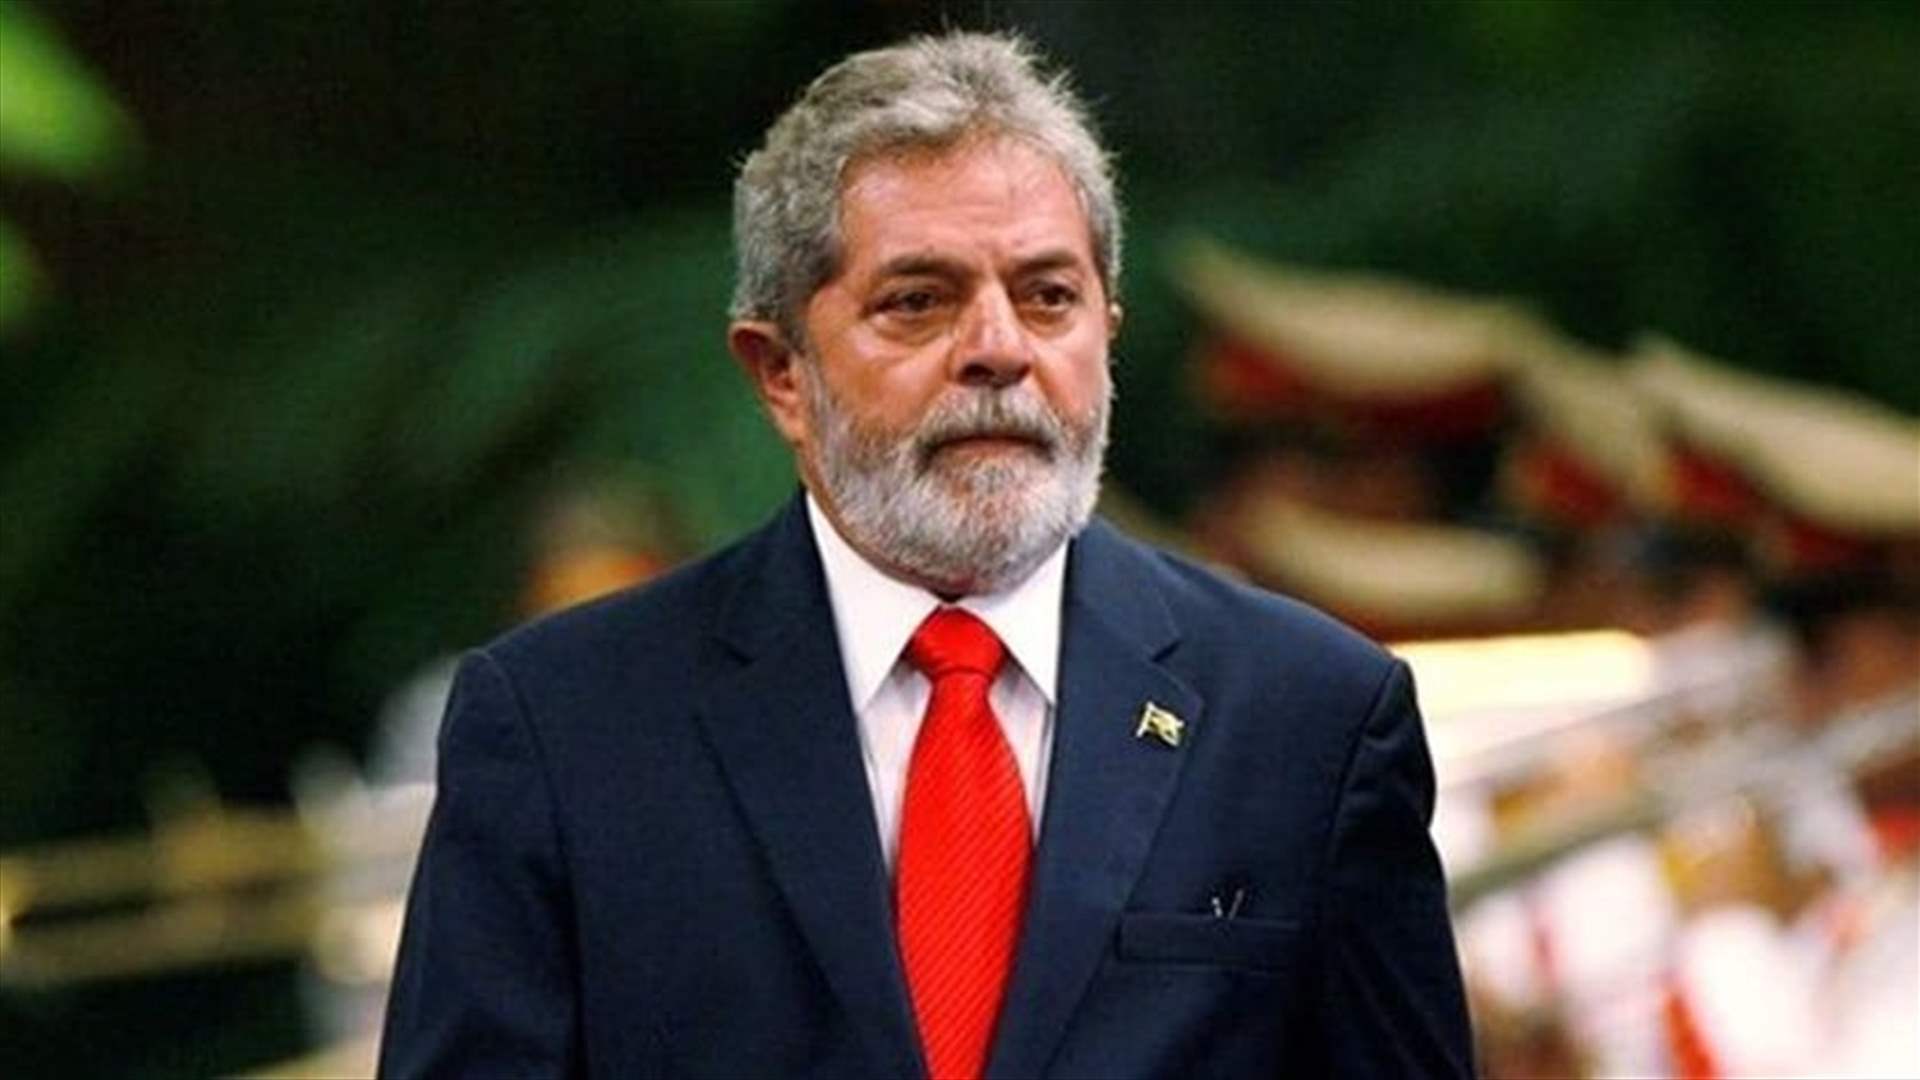 الرئيس البرازيلي يحشد الدعم ضد الجوع قبل اجتماع لوزراء مال مجموعة العشرين      